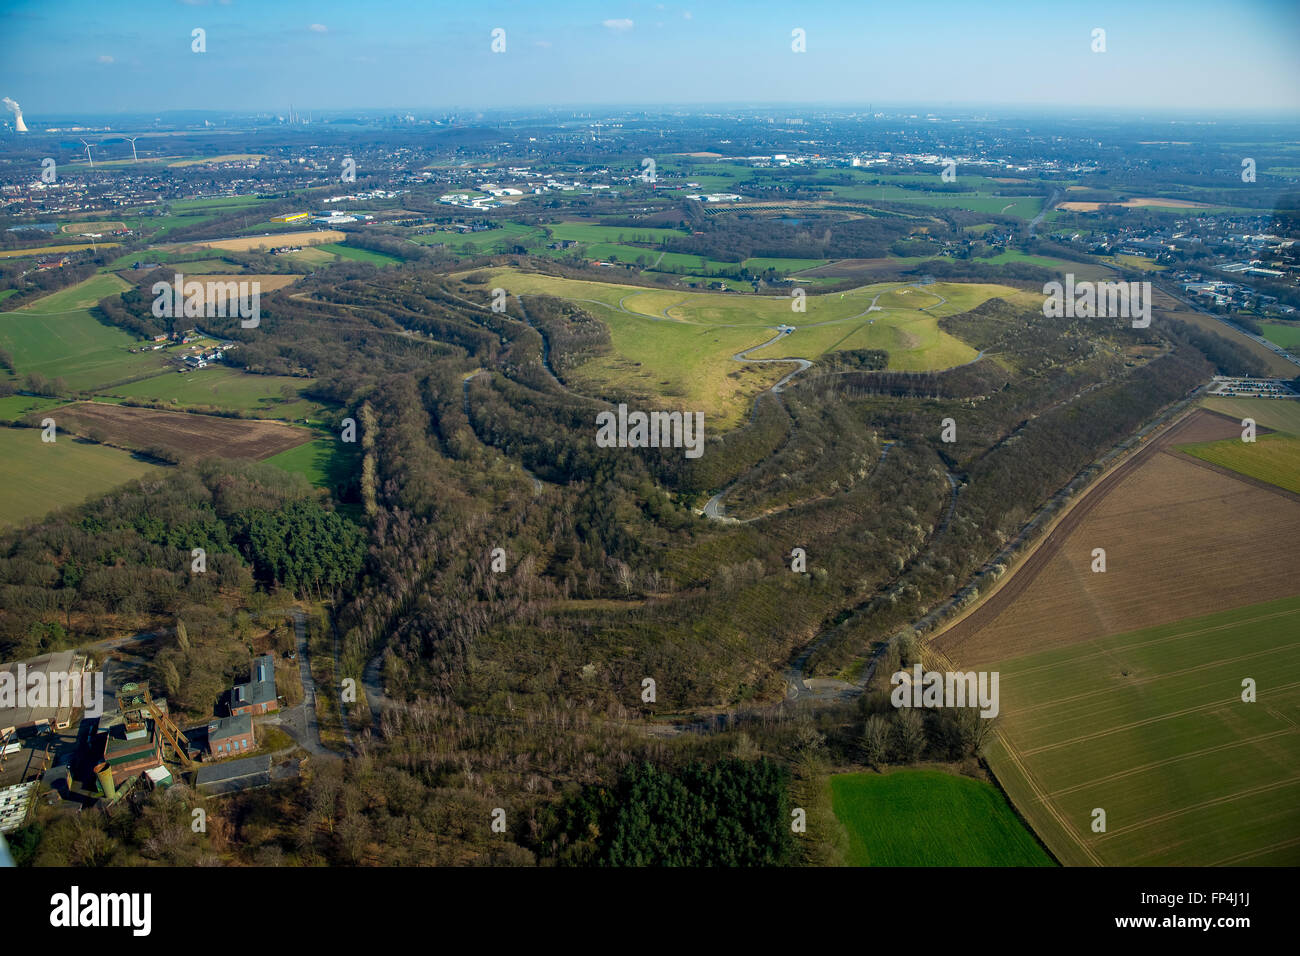 Aerial view, heap North Germany, Kamp-Lintfort, Lower Rhine region, North Rhine Westphalia, Germany, Europe, Aerial view, Stock Photo